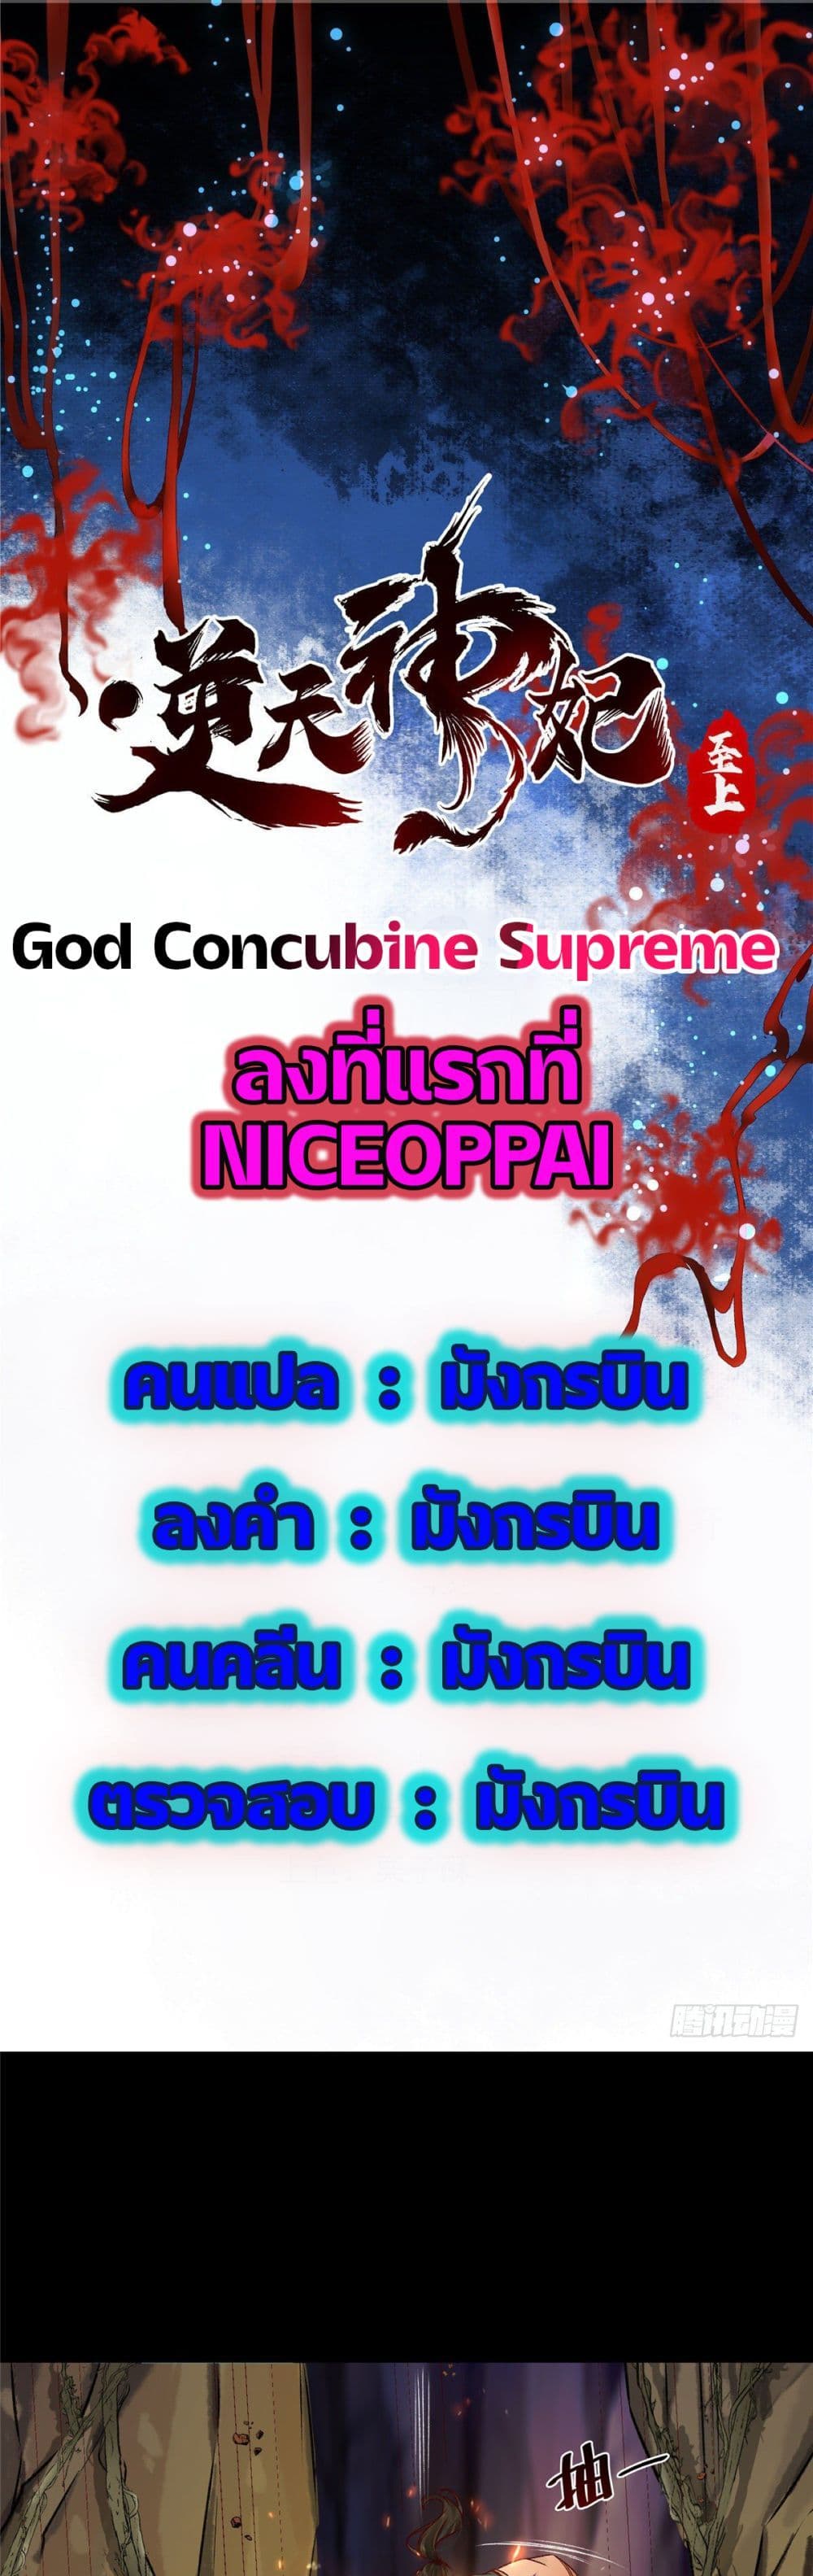 God Concubine Supreme 6-6